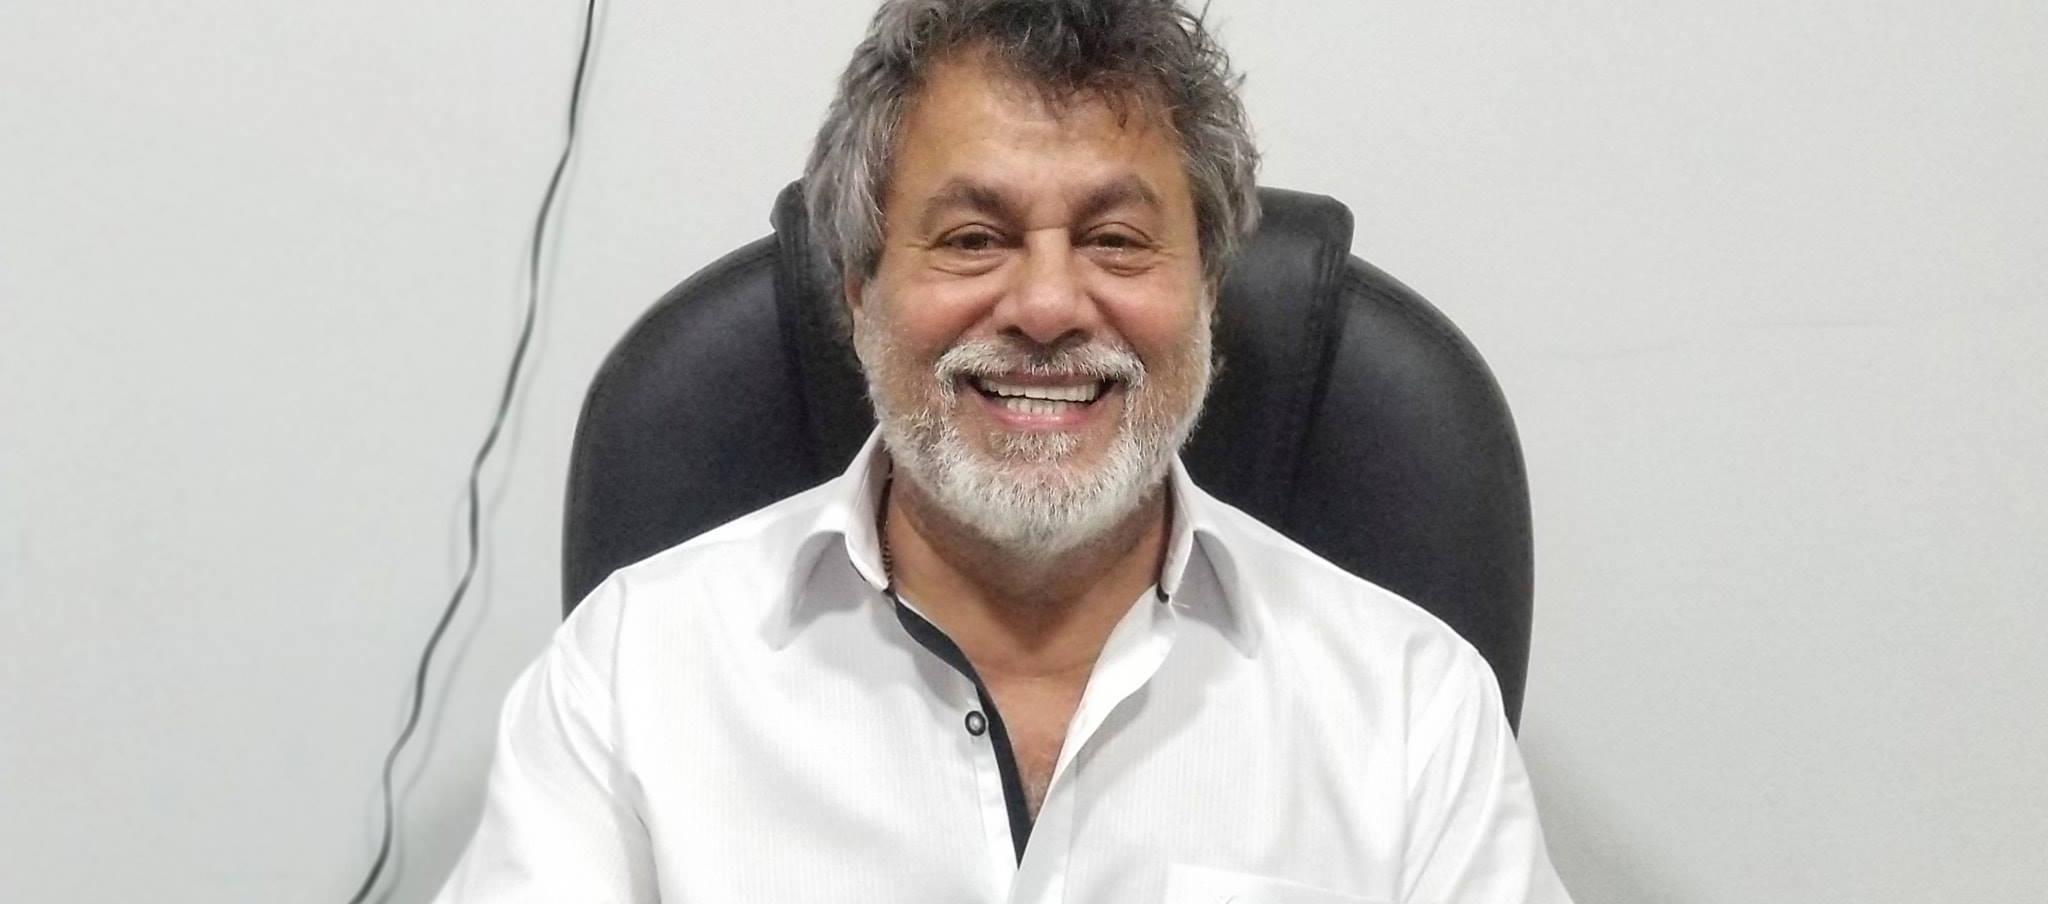 El médico pediatra Oswaldo Díaz fue concejal de Barranquilla durante 23 años